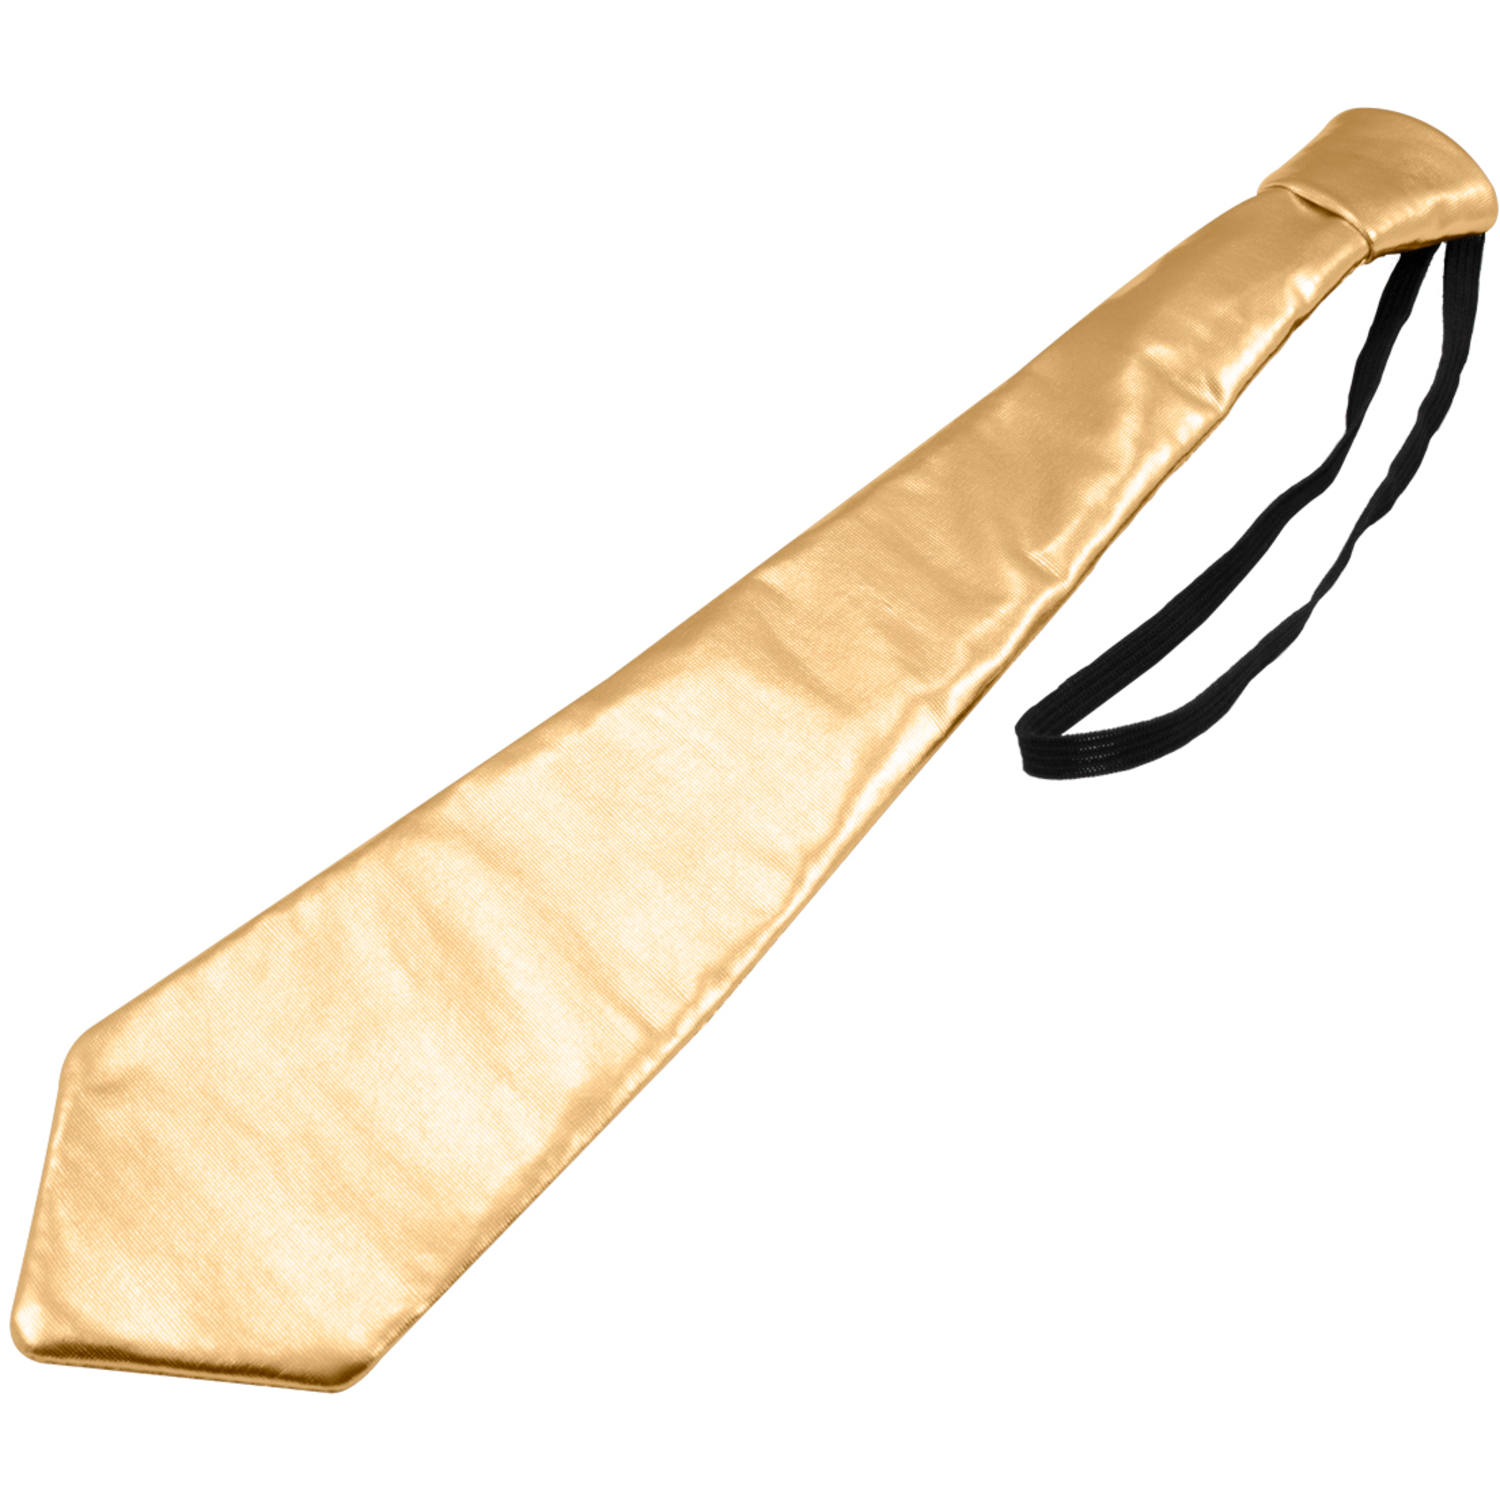 Das metalic goud - Willaert, verkleedkledij, carnavalkledij, carnavaloutfit, feestkledij, dassen, stropdas, das, tie